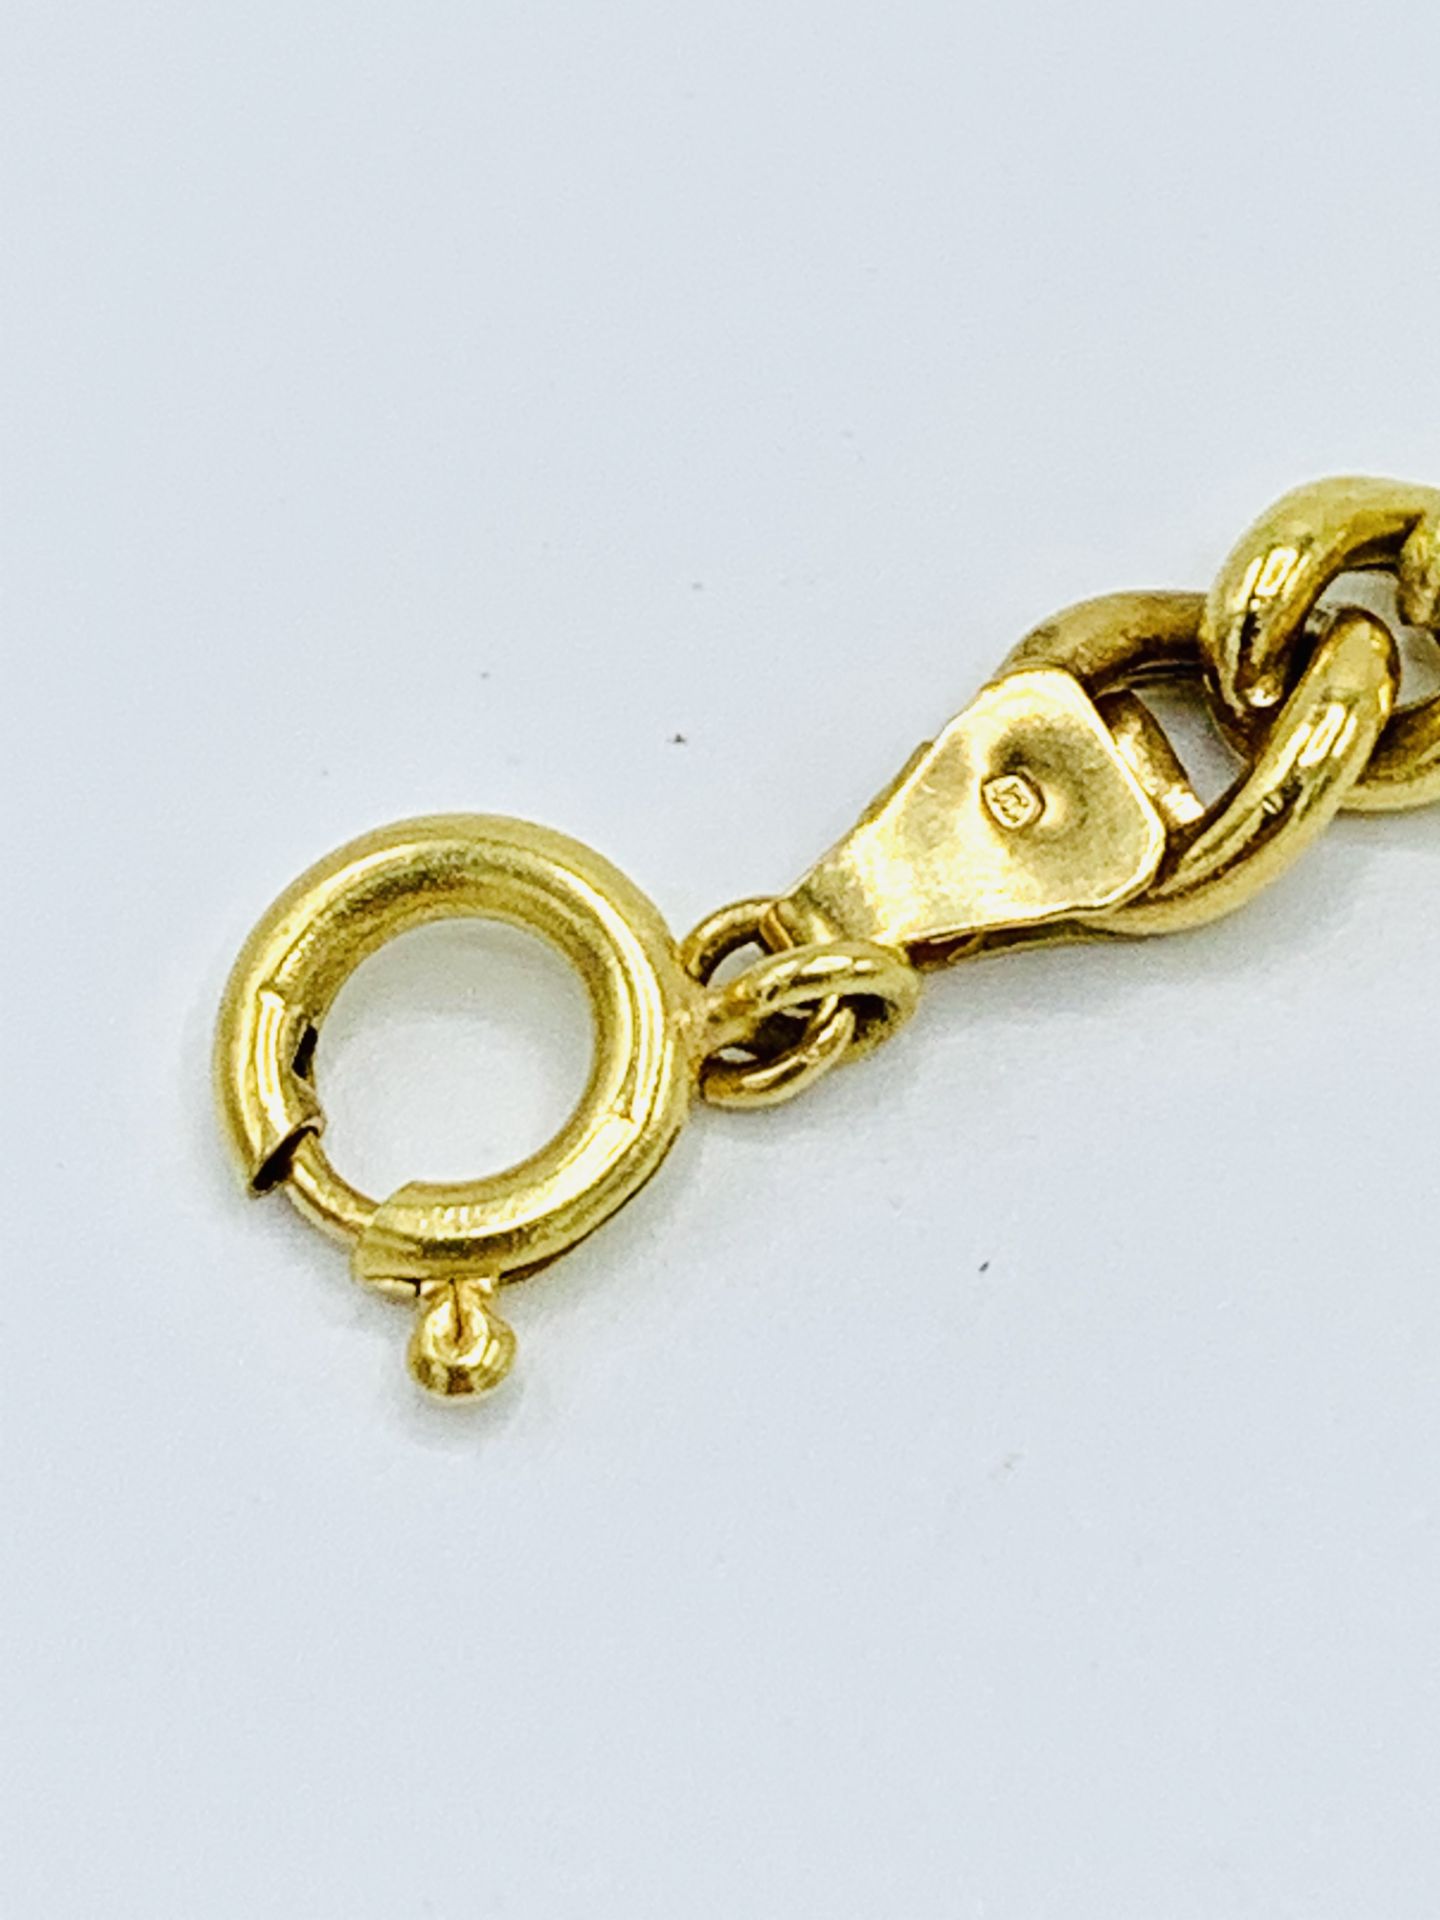 750 gold chain link bracelet. - Image 7 of 7